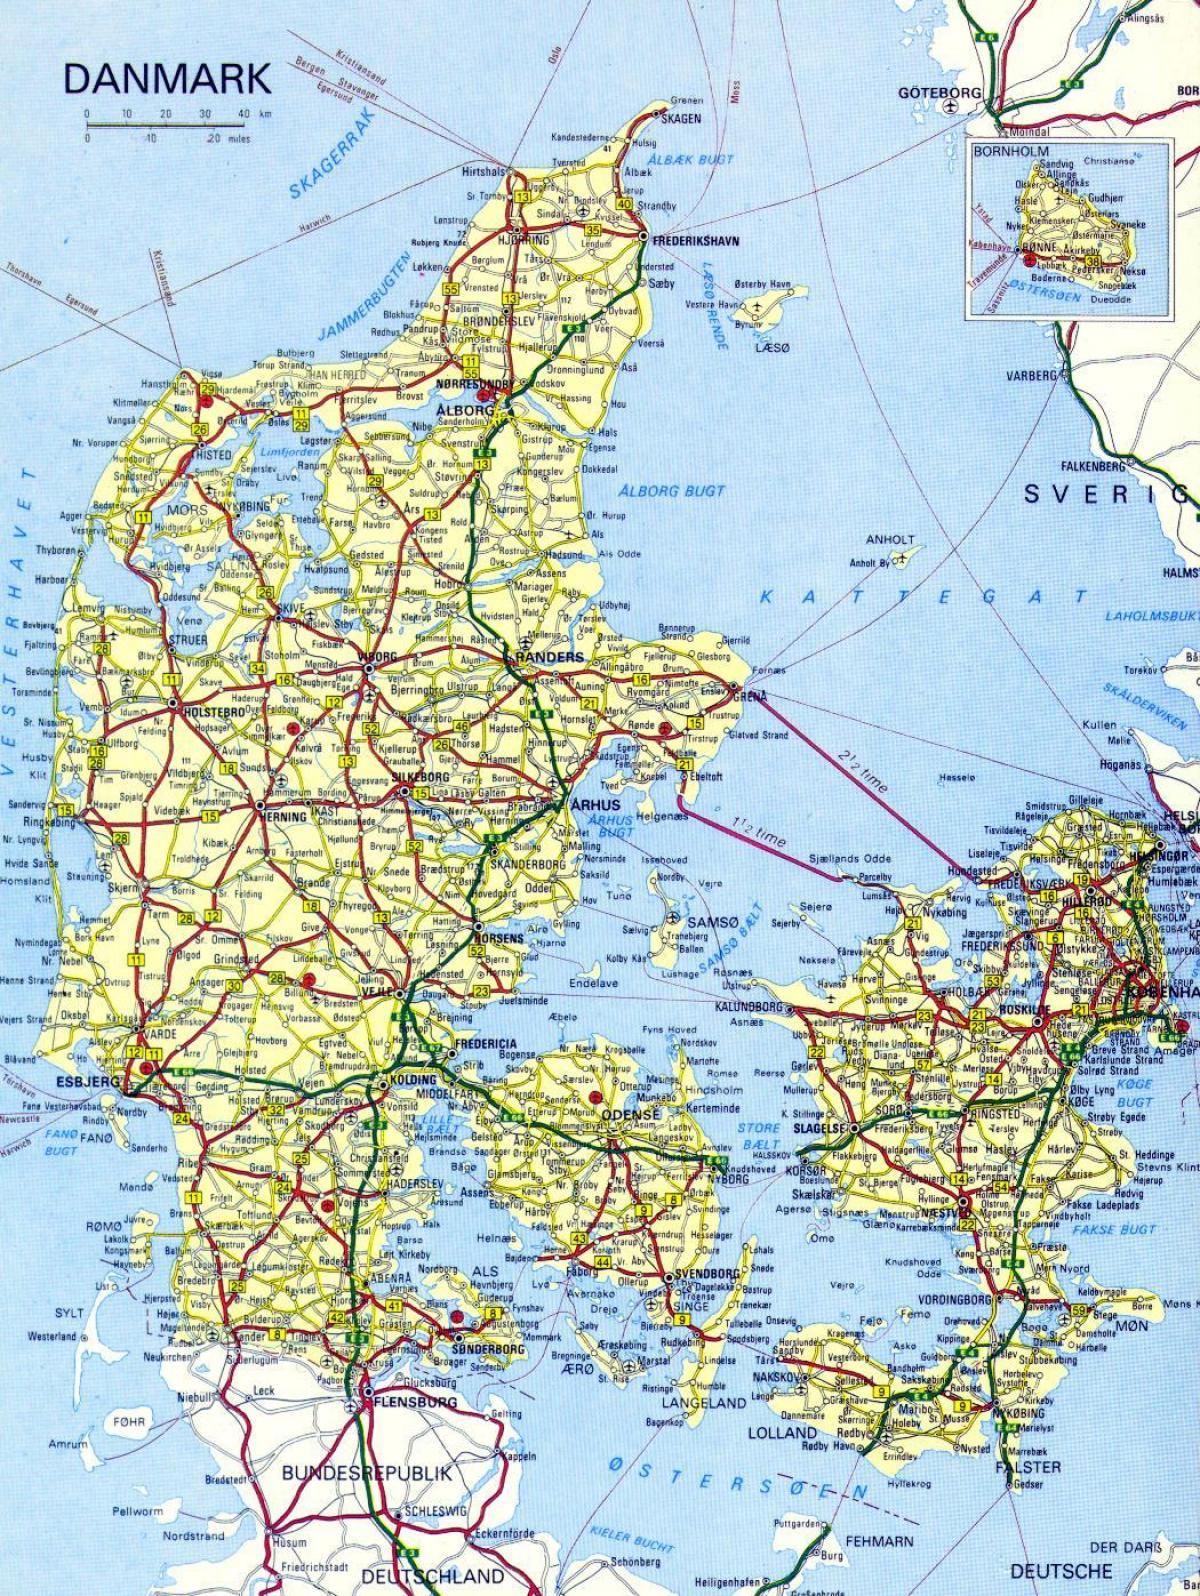 Yol haritası Danimarka